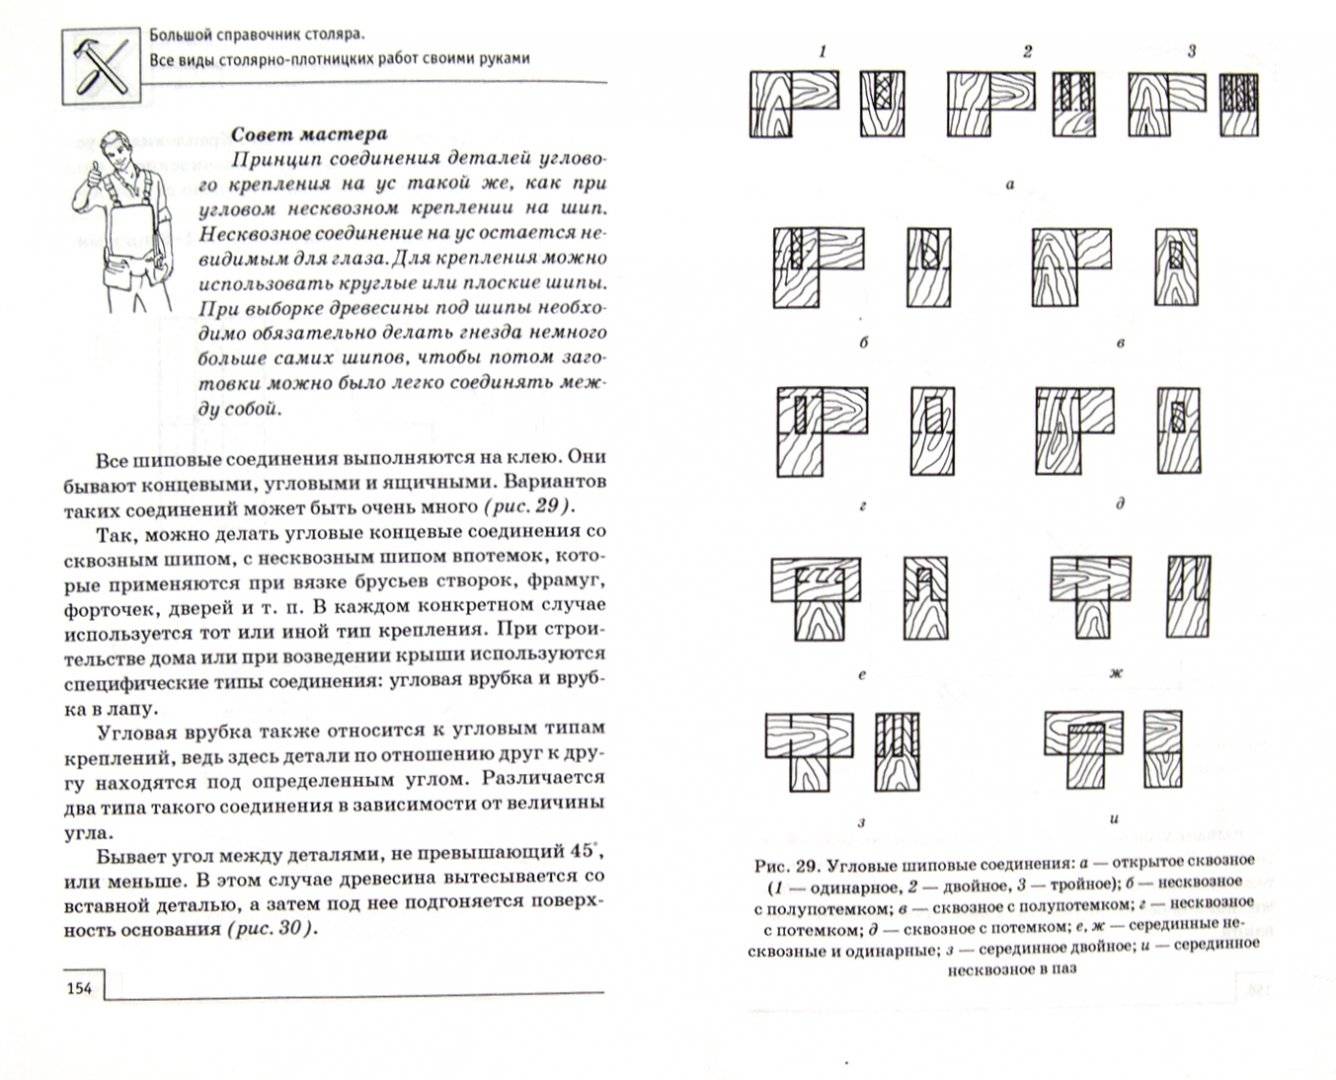 Инструменты сельского столяра и плотника. сахаров м.д. 1993 | библиотека: книги по архитектуре и строительству | totalarch